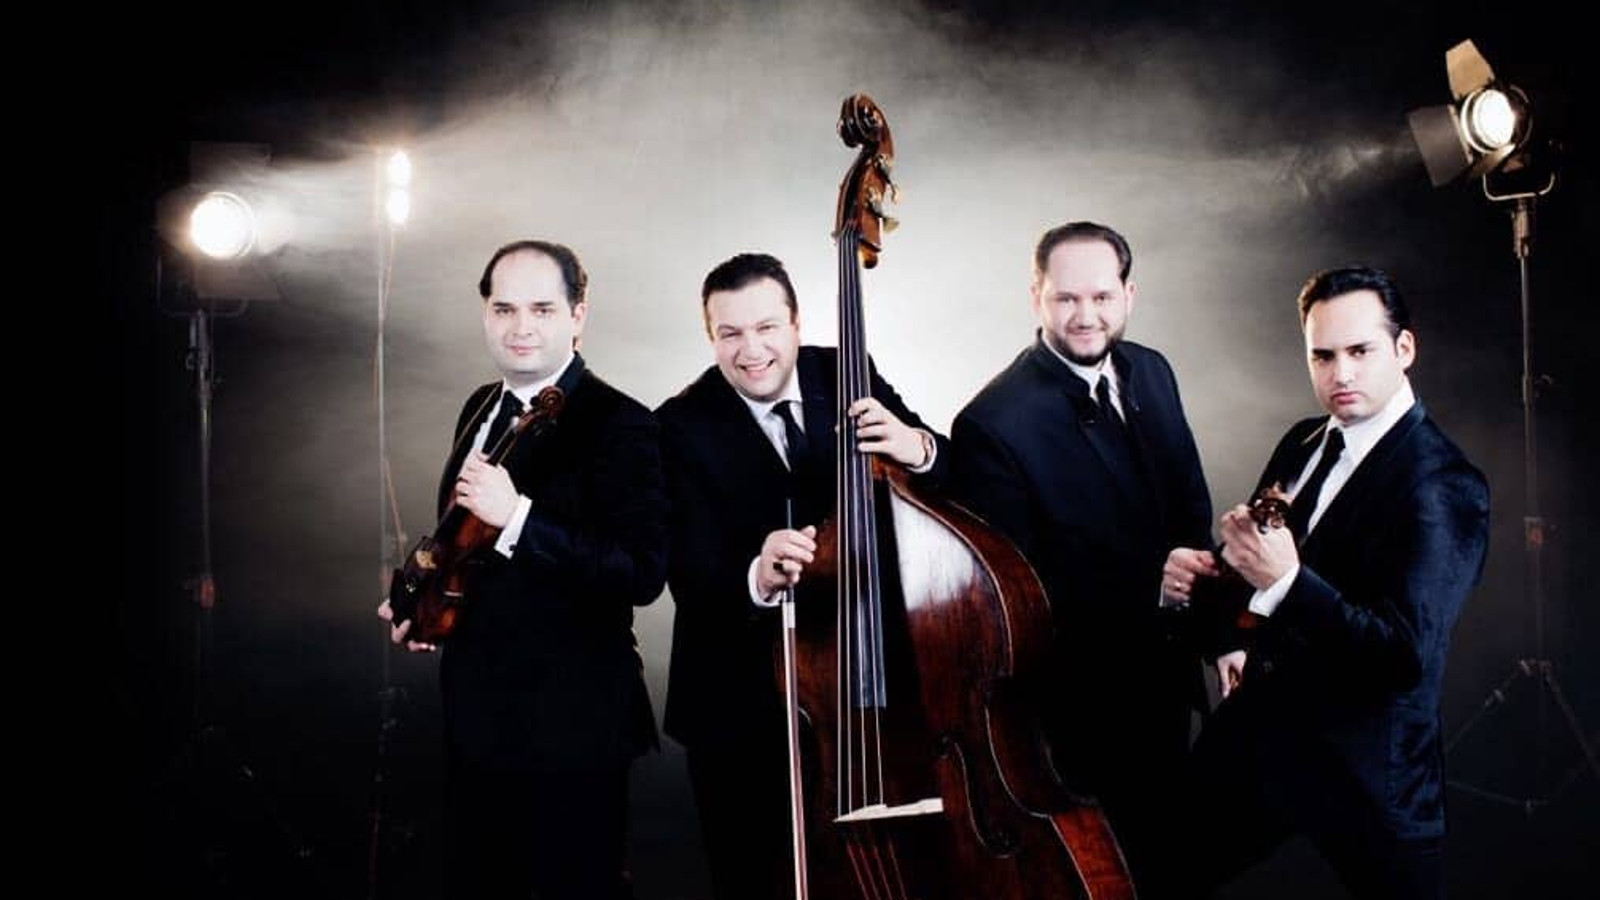 Kuvassa ovat Janos Ensemblen neljä jäsentä soittamassa viuluja ja pianoa mustissa puvuissa.